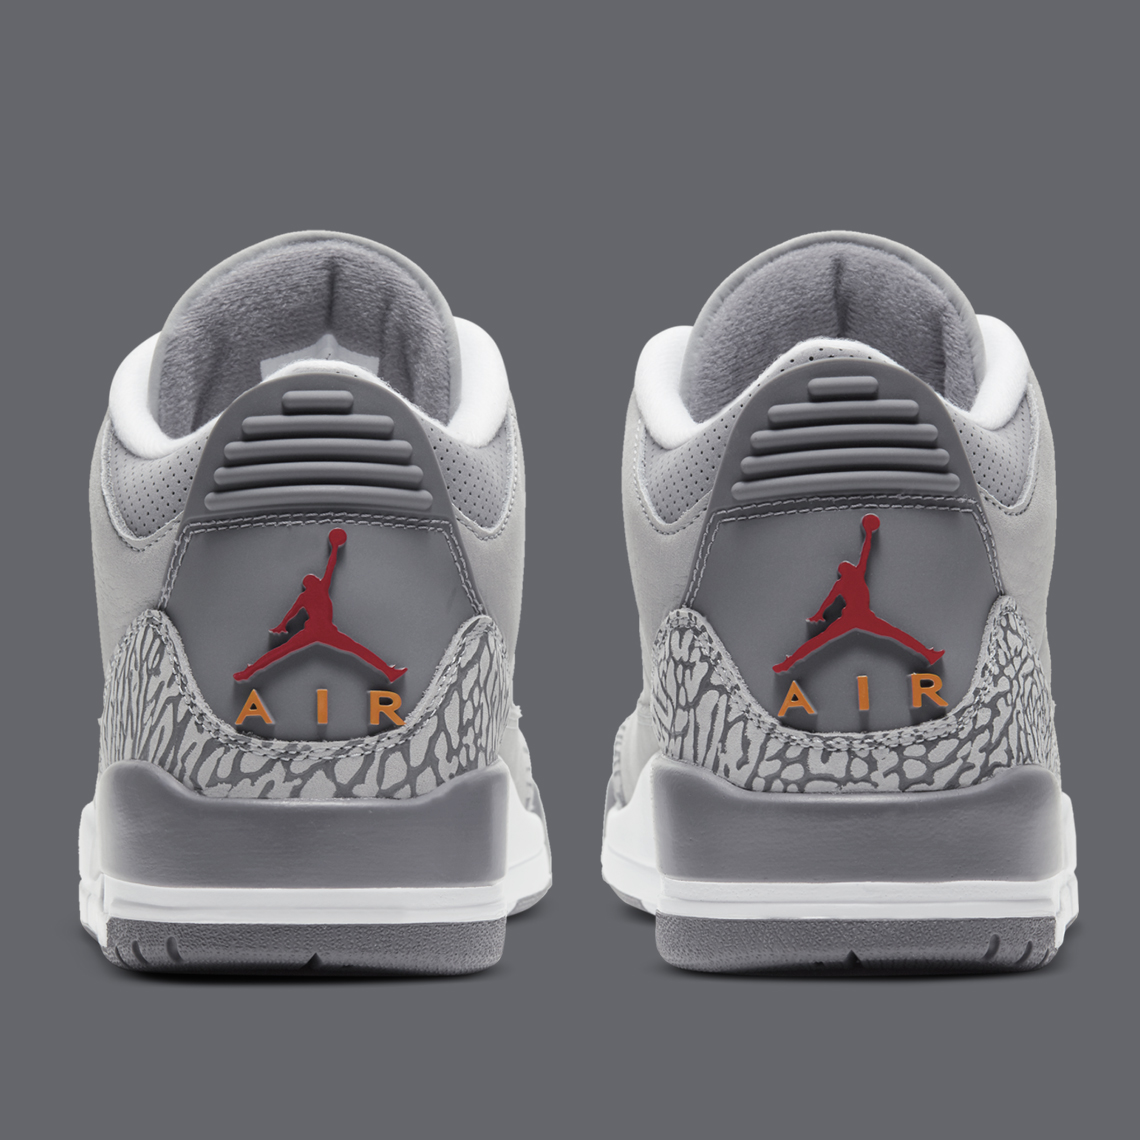 Air Jordan 3 Cool Grey Release Date Ct8532 012 Sneakernews Com